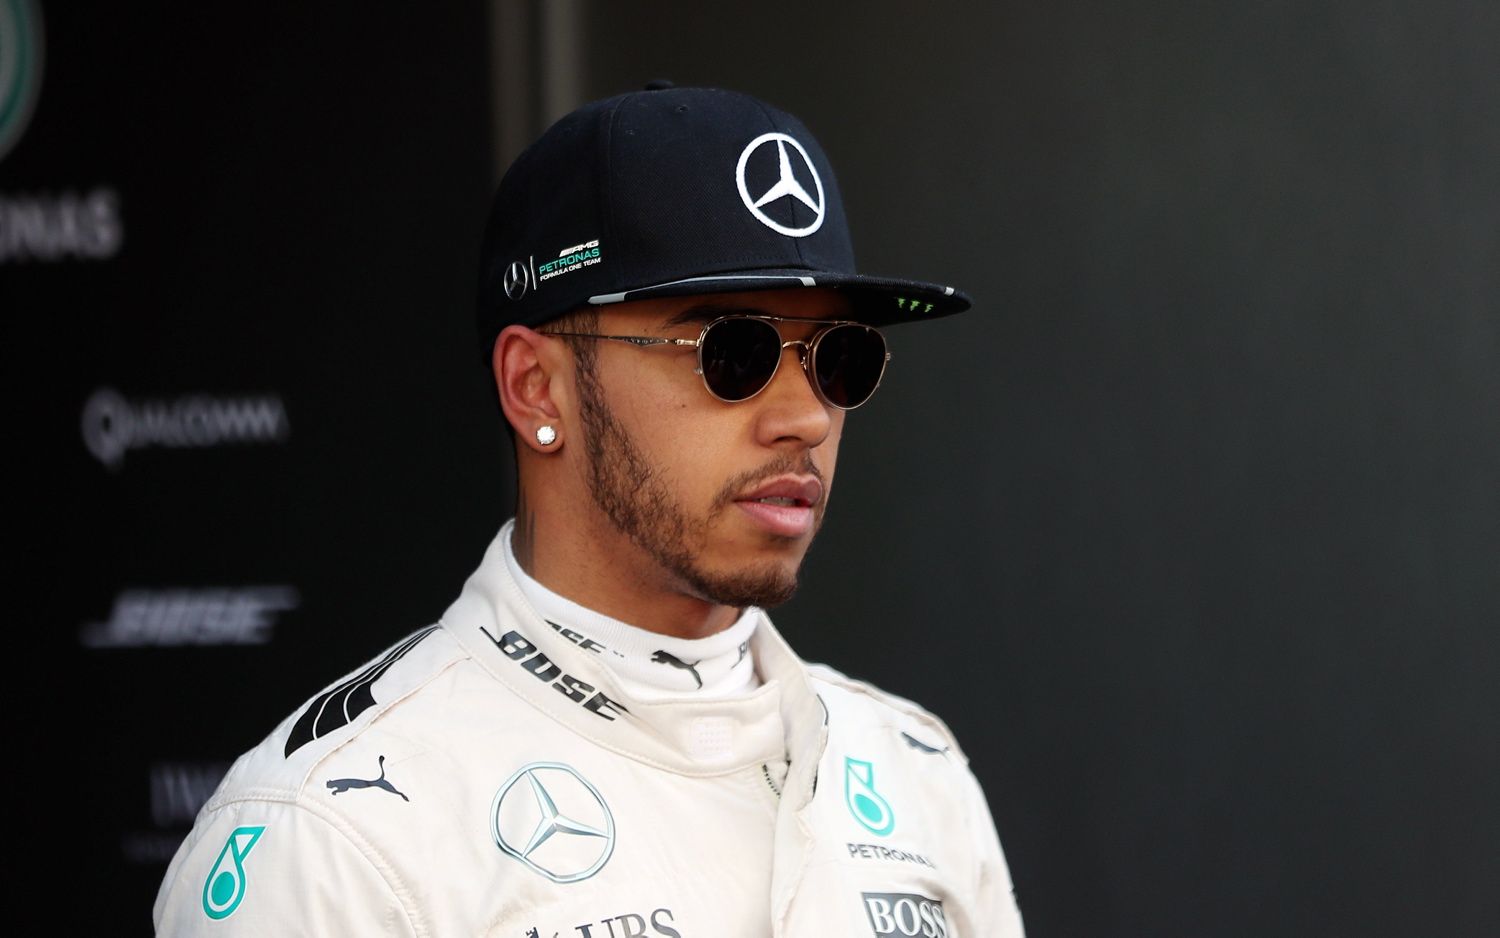 Lewis Hamilton continua a mostrarsi critico nei confronti della Mercedes, per quanto accaduto ad Abu Dhabi (foto da: arabia.eurosport.com)